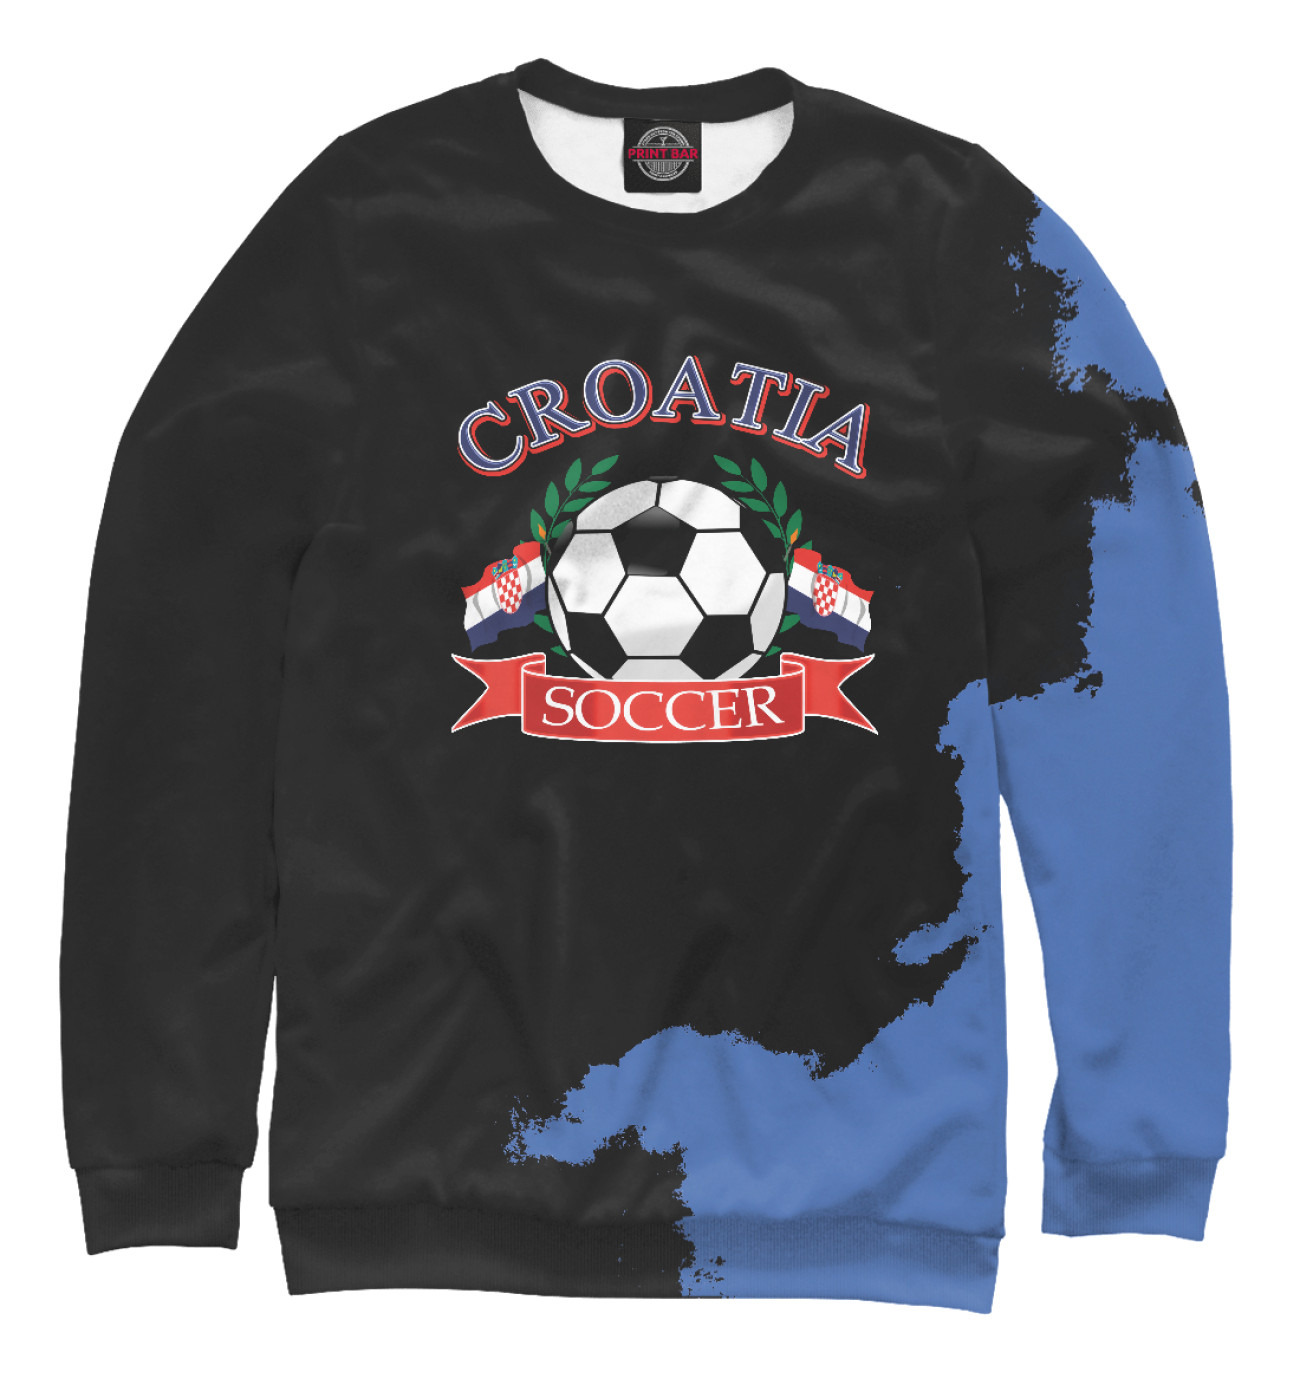 Мужской Свитшот Croatia soccer ball, артикул: FTO-670002-swi-2